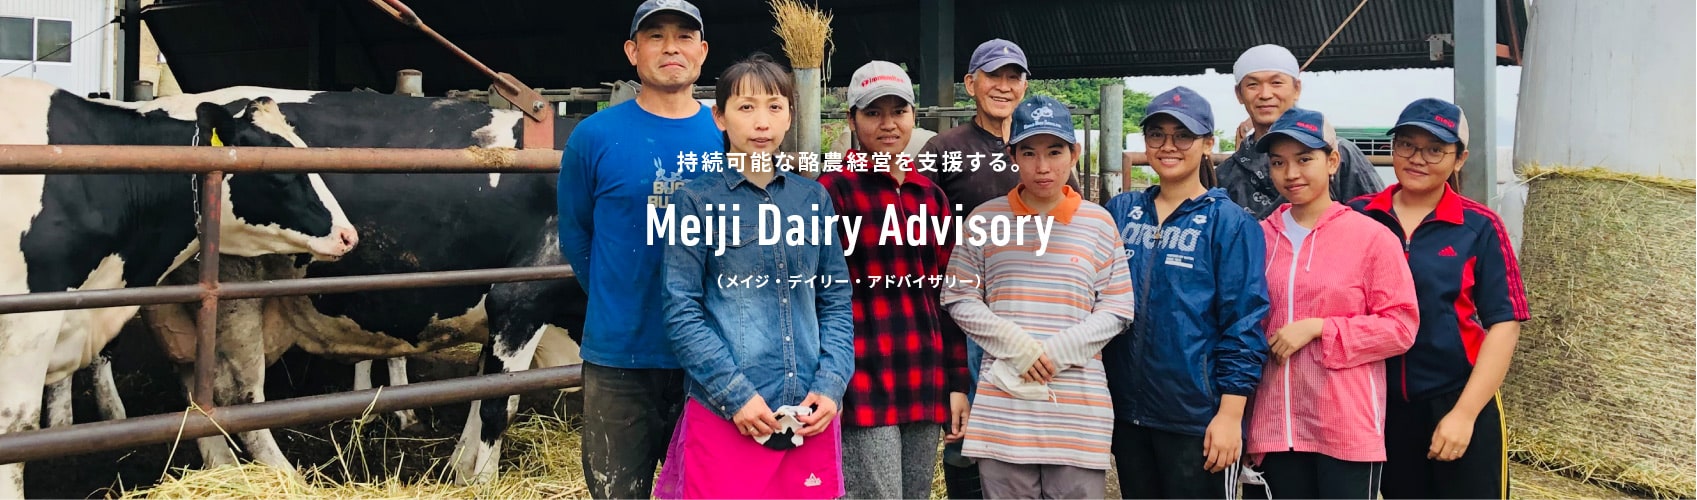 持続可能な酪農経営を支援する。 Meiji Dairy Advisory （メイジ・デイリー・アドバイザリー）